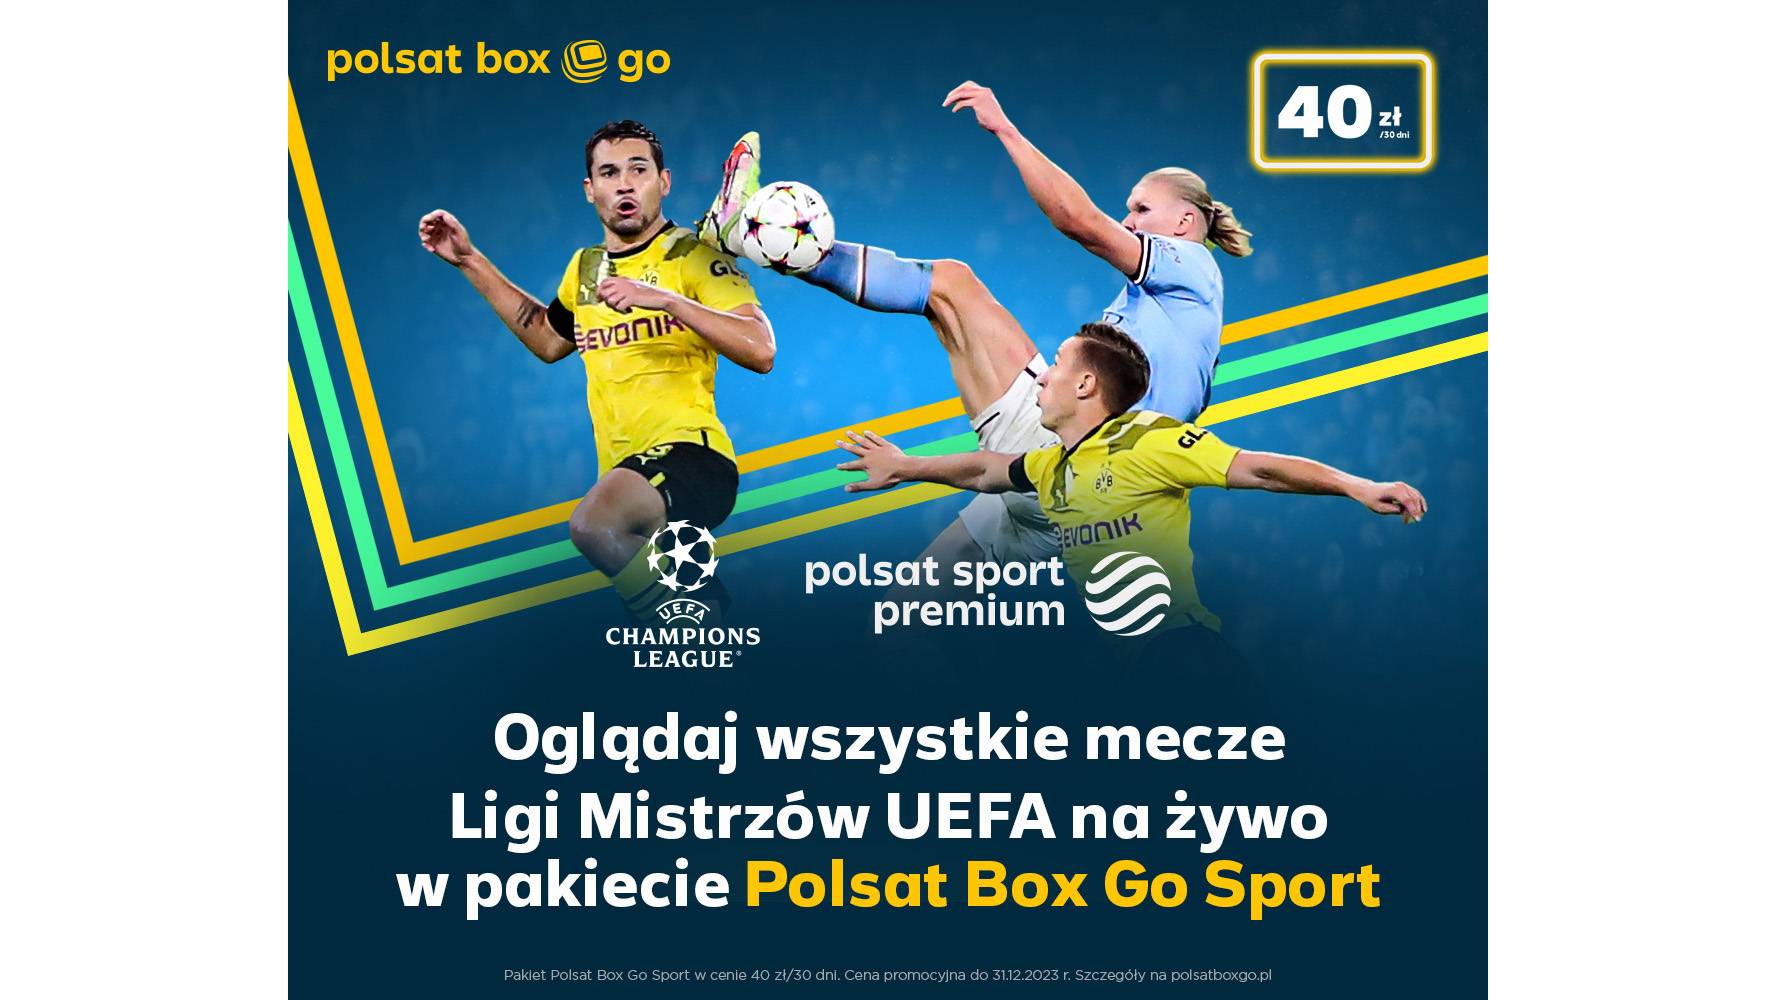 Liga Mistrzów UEFA w Polsat Sport Premium